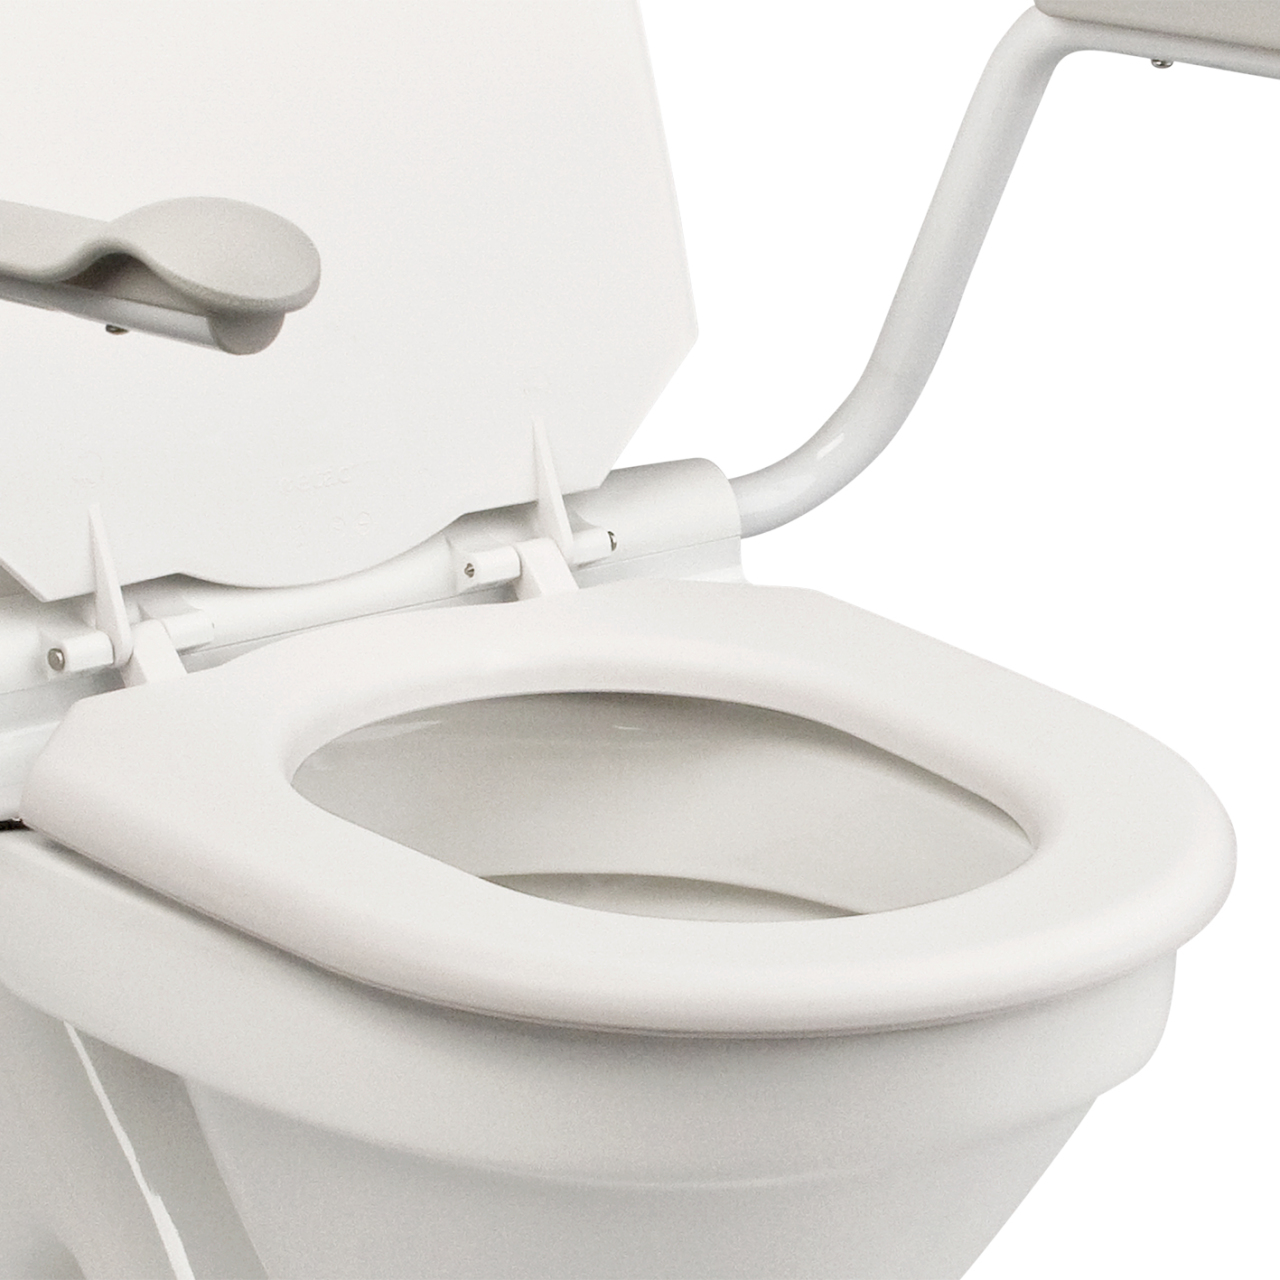 Supporter II Toilettenarmstützen, mit Sitzbrille und Deckel, Armlehnen  hochklappbar, Toilettenarmlehnen für ein leichteres Hinsetzen und Aufstehen  beim Toilettengang, bis 150kg, Burbach + Goetz